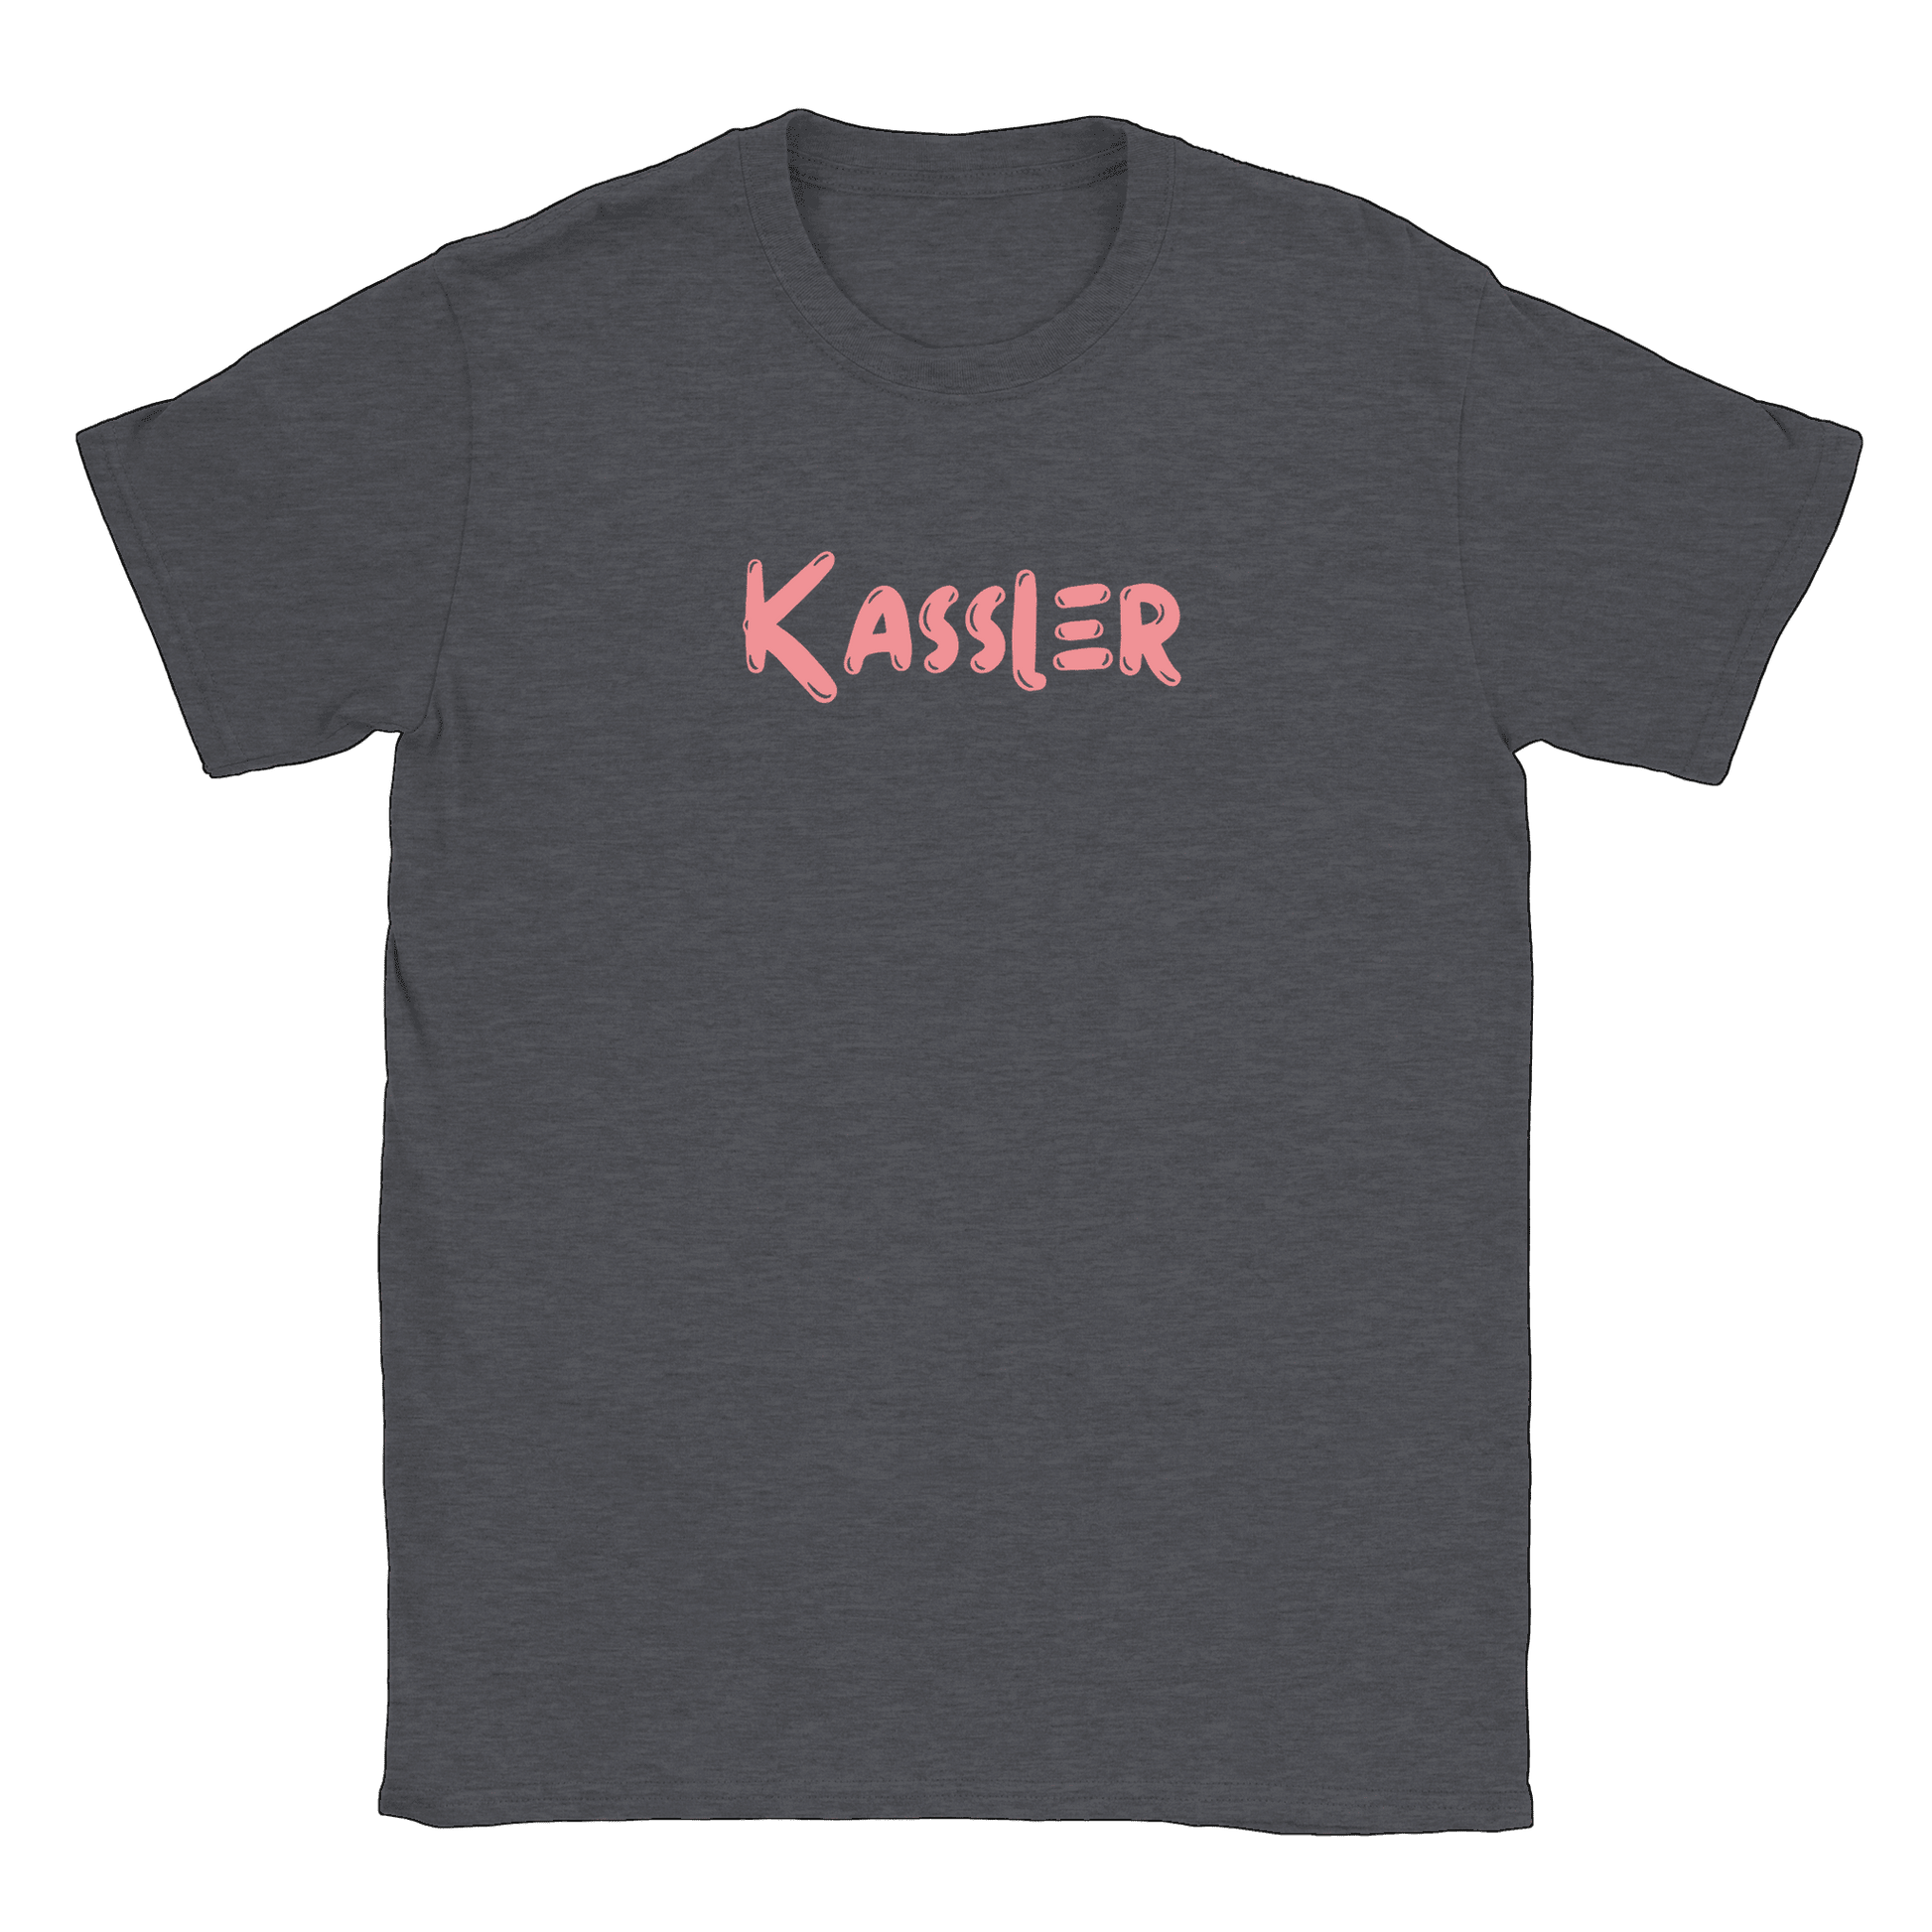 Kassler - T-shirt Mörk Ljung